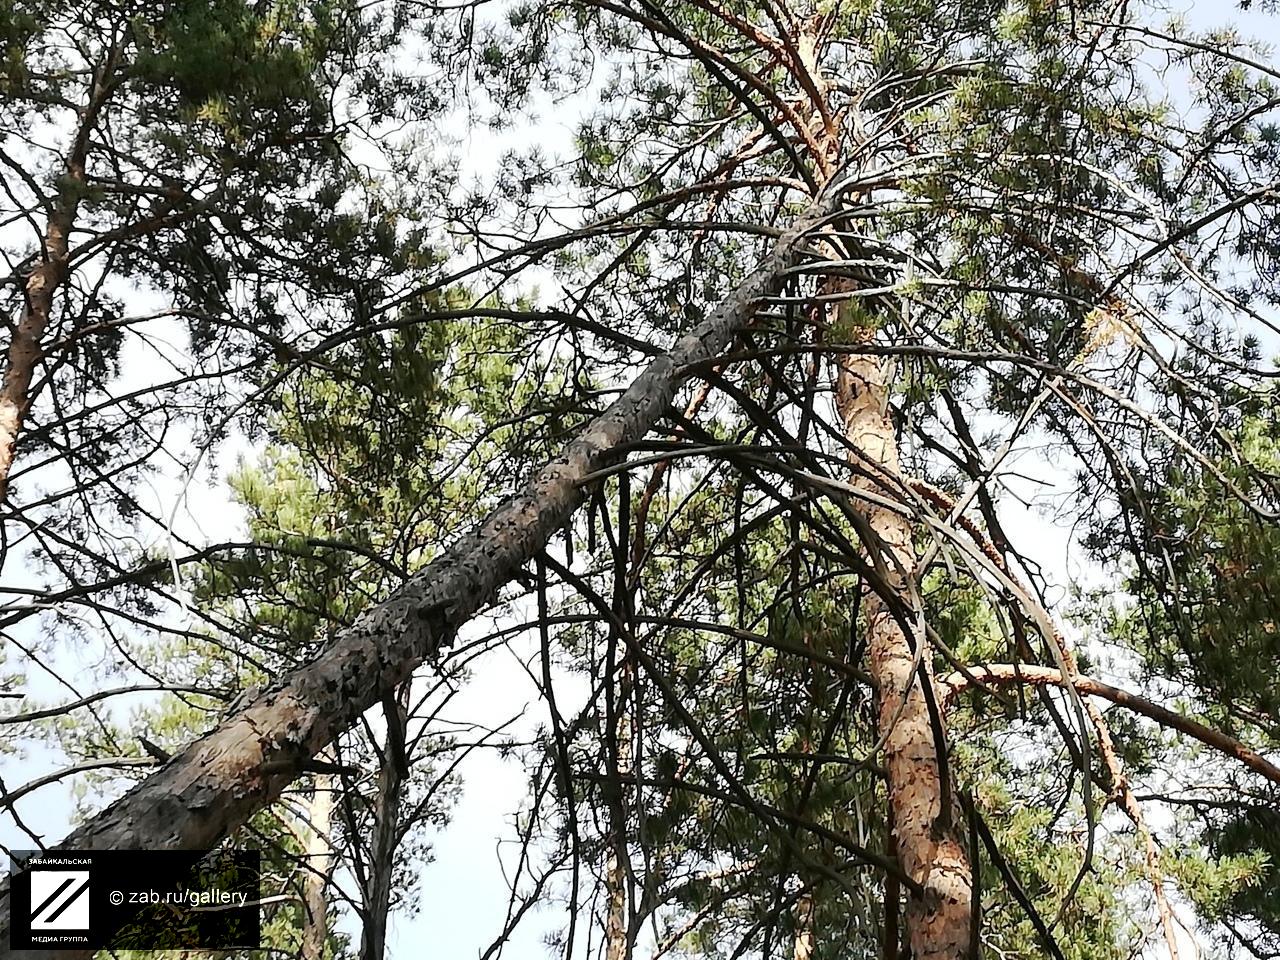 Сухое дерево грозит обрушиться на прохожих между «Академией Здоровья» и ККБ - очевидец